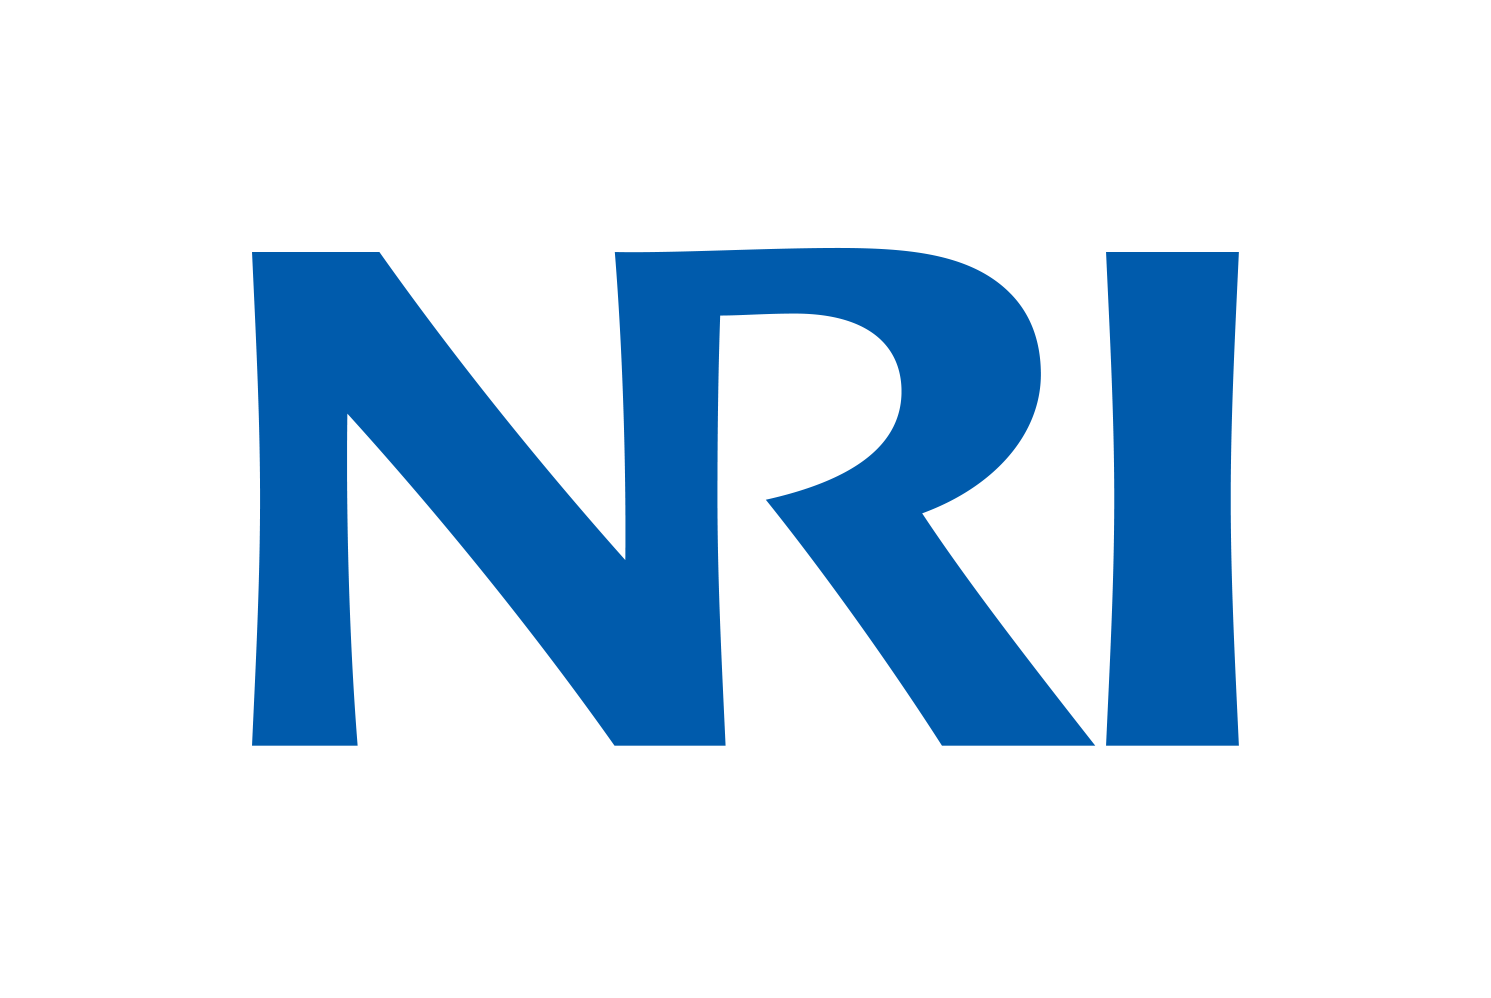 Logo of NRI - Nomura Research Institute